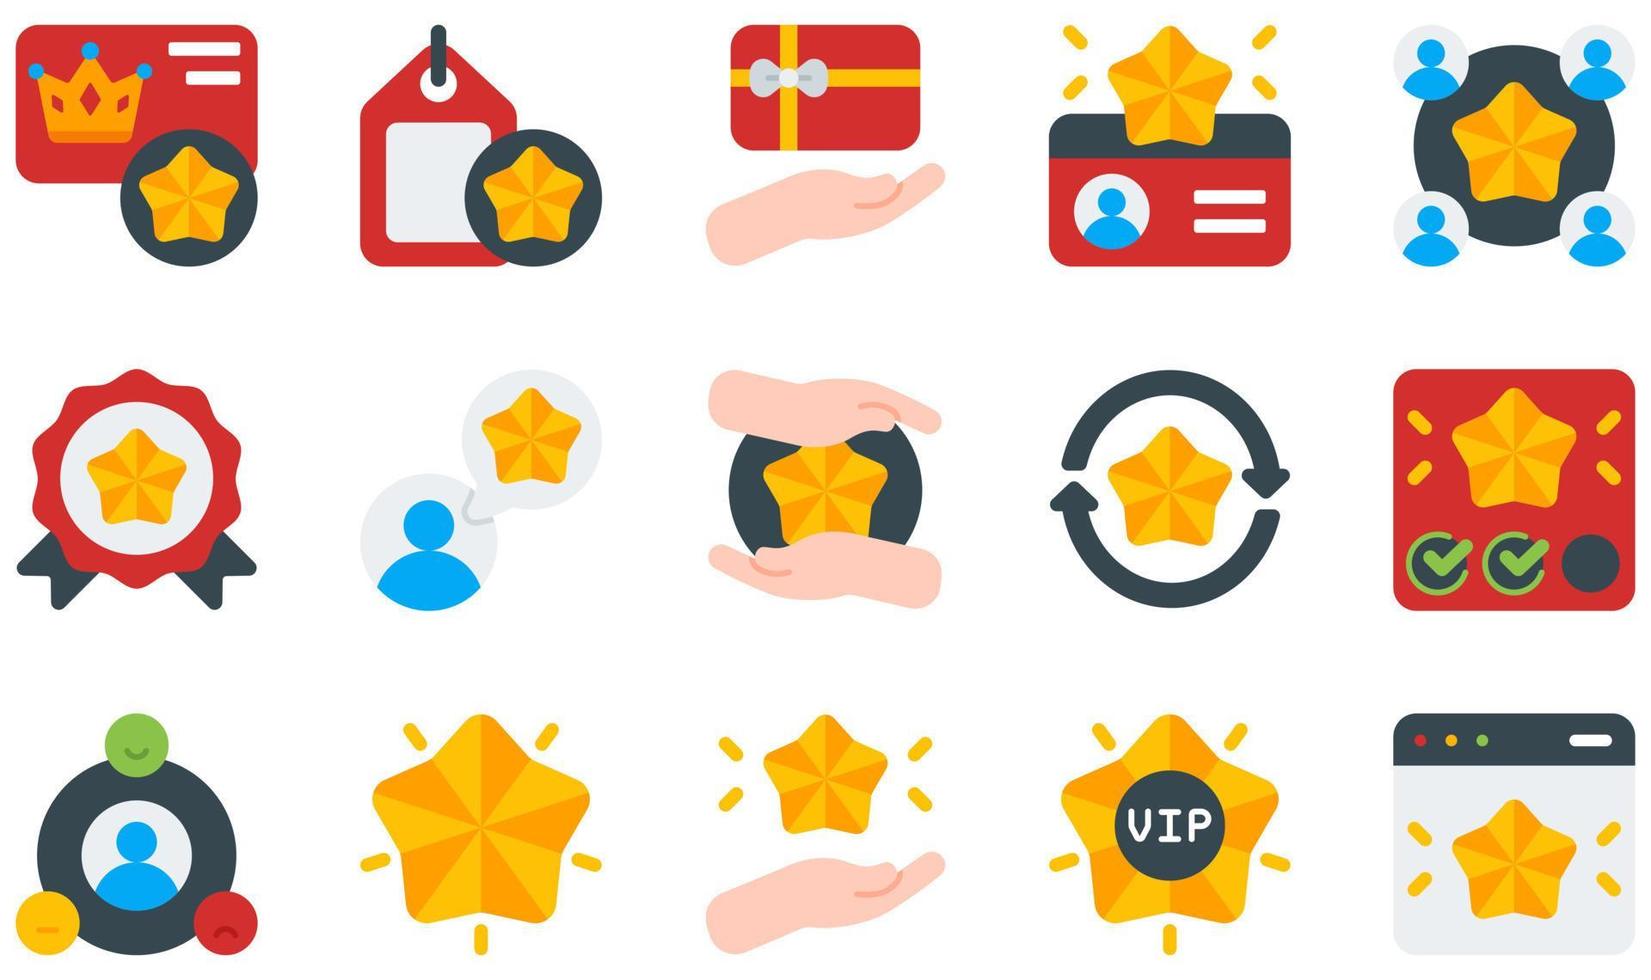 ensemble d'icônes vectorielles liées à la fidélité des clients. contient des icônes telles que carte de fidélité, étiquette de fidélité, membre, carte de membre, adhésion, relation, etc. vecteur